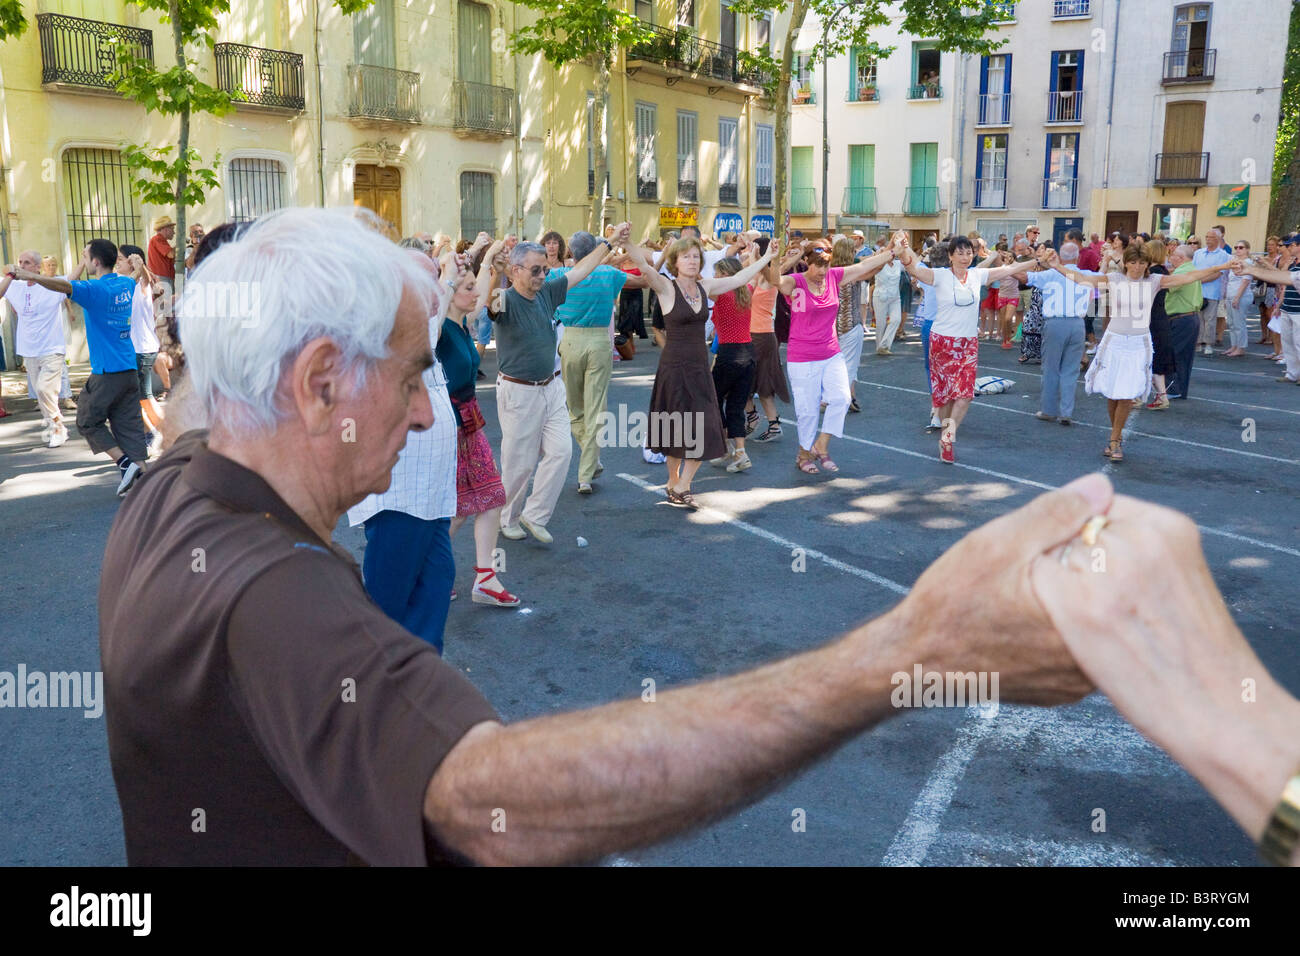 Sardana ballerini danzano al cinquantunesimo 'Concours de Sardanes' sulla Place de la République a Céret nel sud della Francia Foto Stock